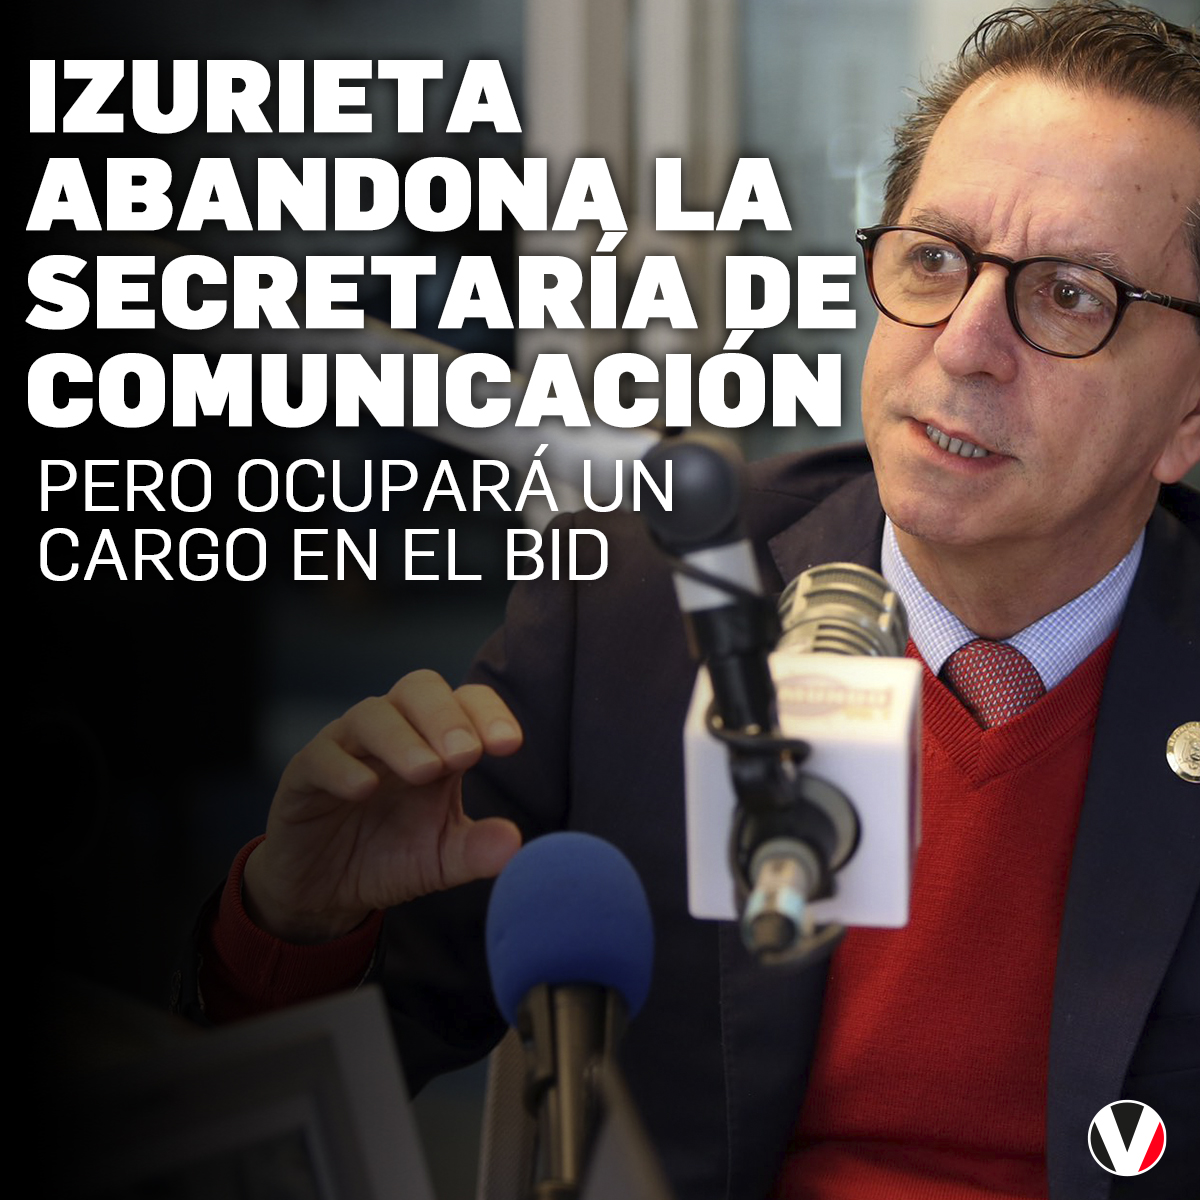 #ATENCIÓN | Los cambios en el gabinete de Daniel Noboa continúan. Esta vez Roberto Izurieta abandonó la Secretaría General de Comunicación, pero ocupará este cargo en el BID: v.vistazo.com/4b8puDi